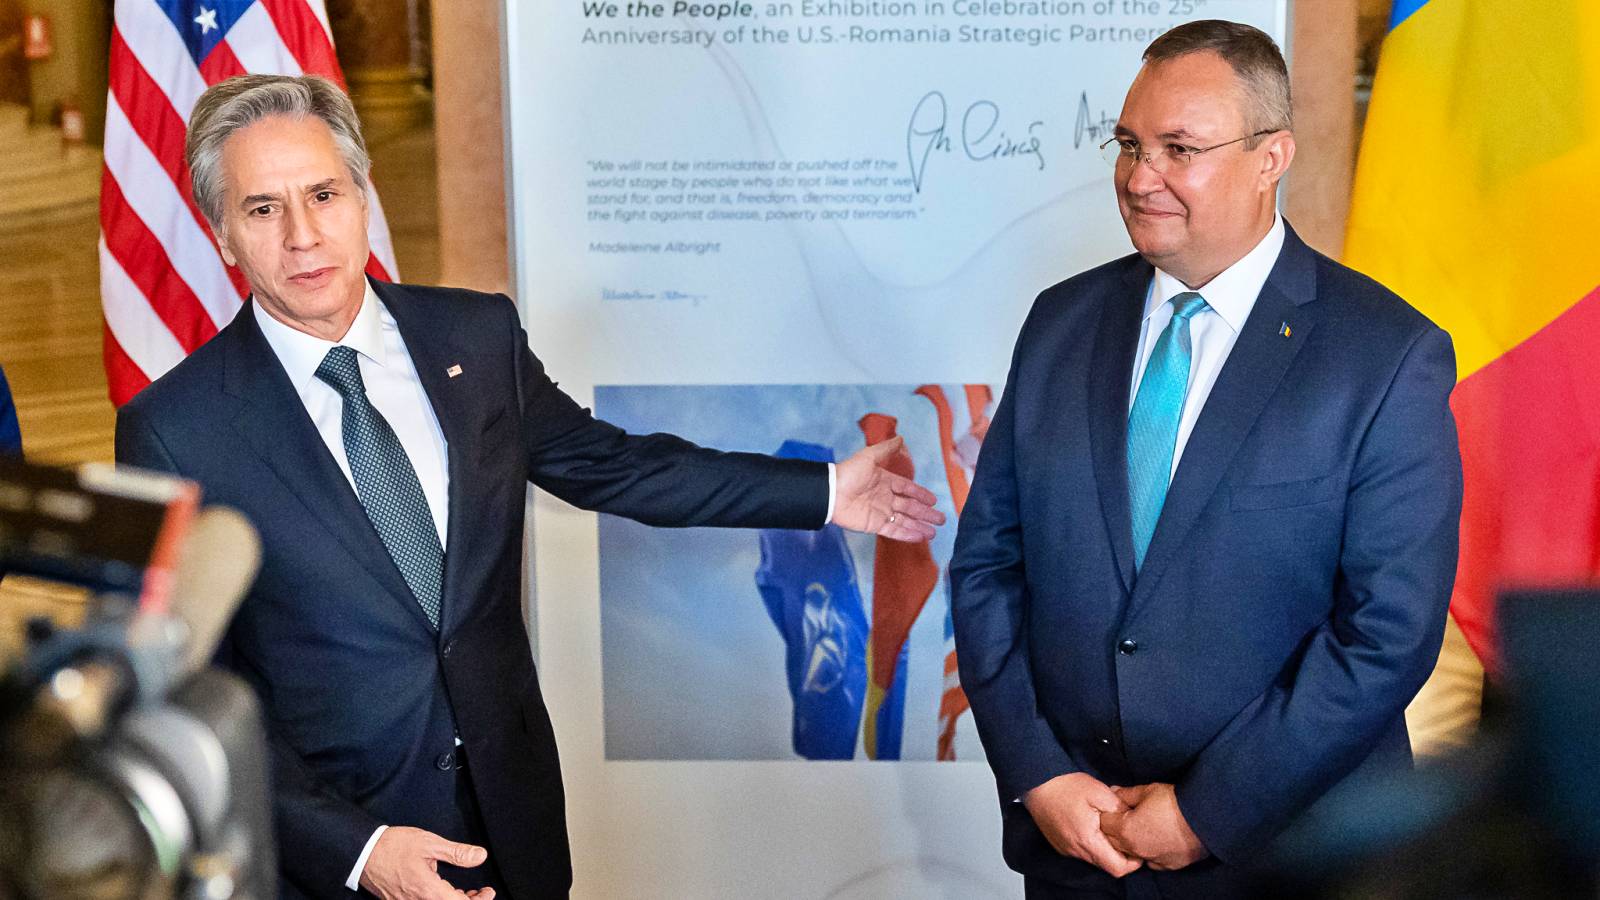 Nicolae Ciuca anunta Consolidarea si Extinderea Parteneriatului cu SUA